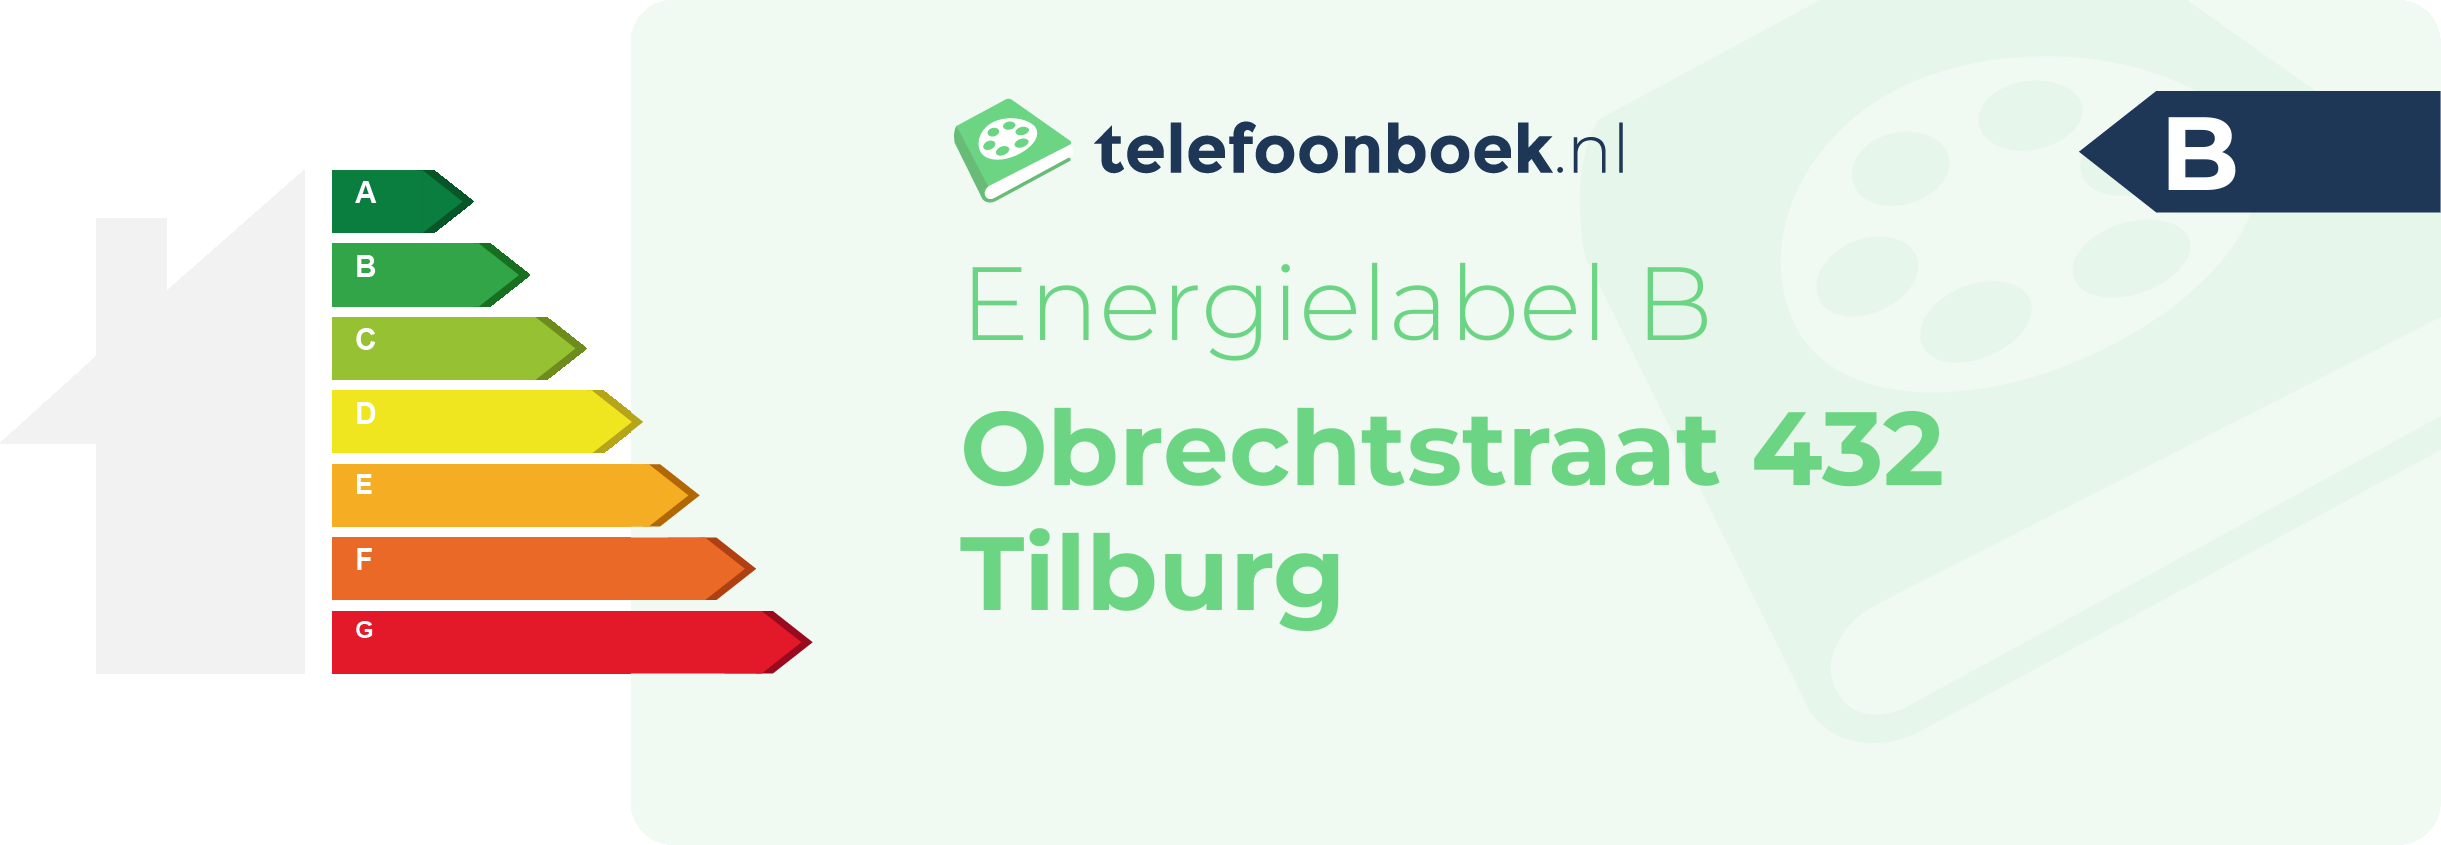 Energielabel Obrechtstraat 432 Tilburg